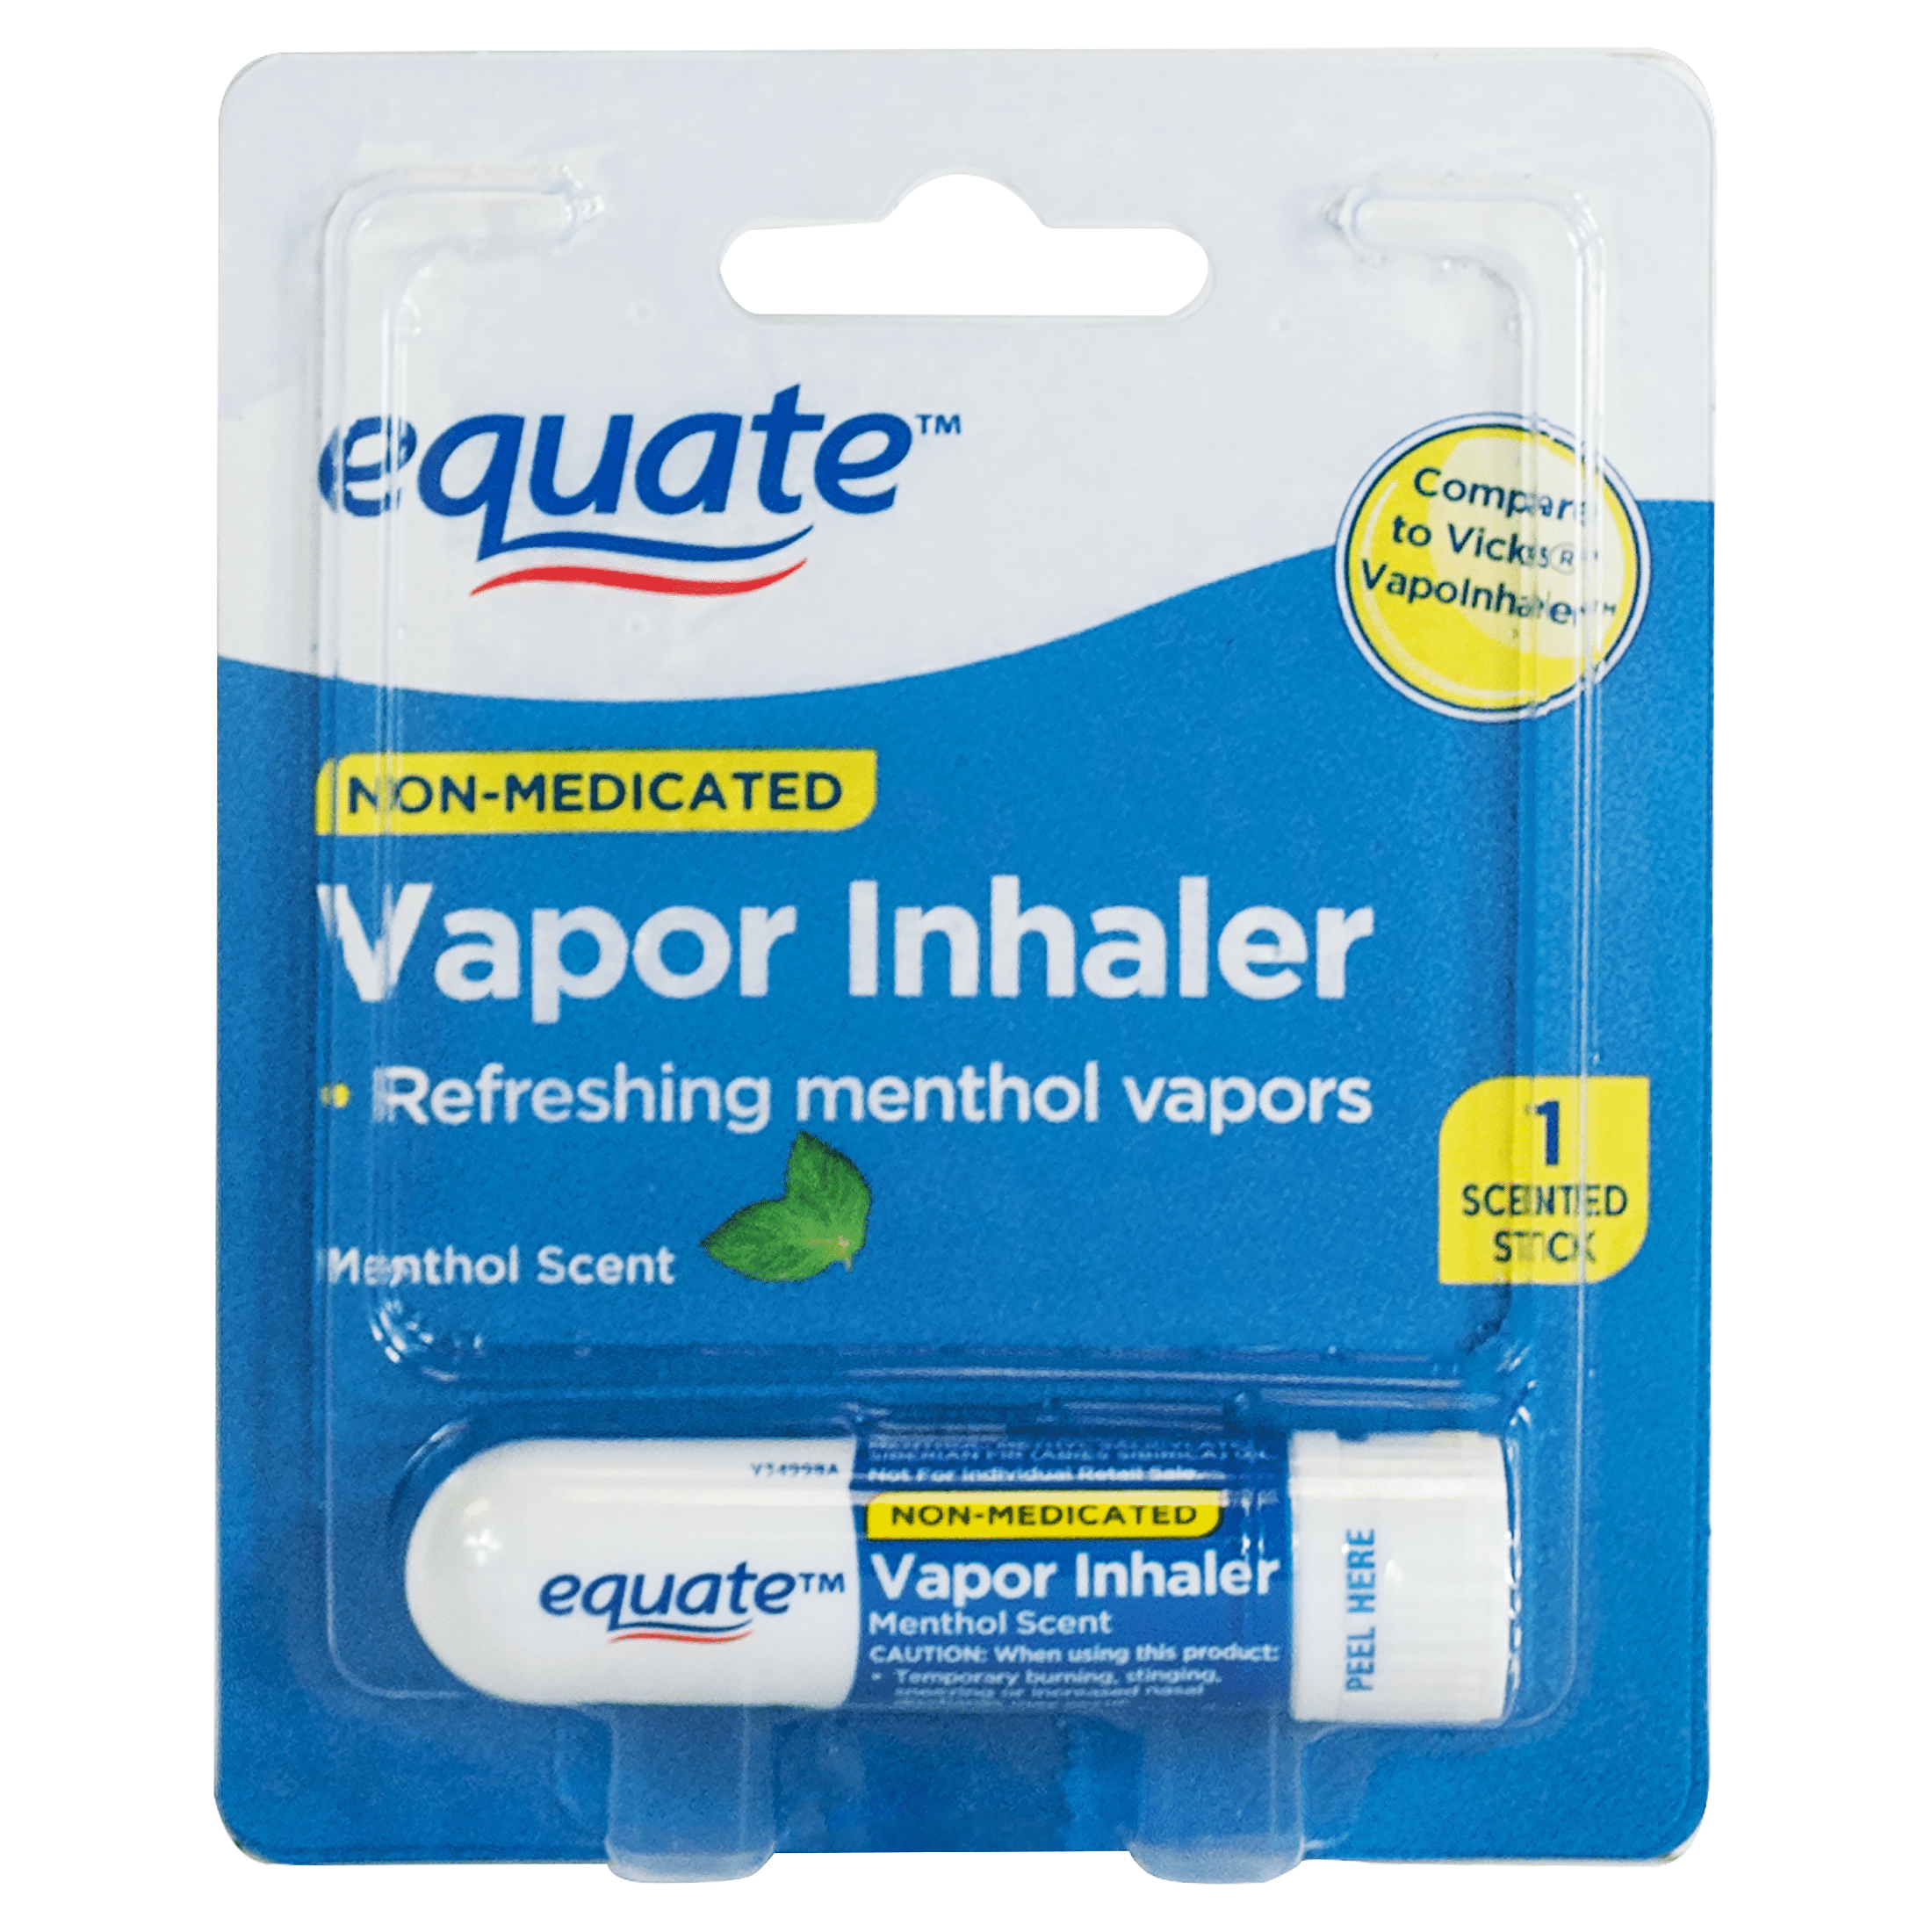 Equate Non-Medicated Vapor Inhaler Stick for Nasal Decongestion, Menthol Scent - 1 Pack